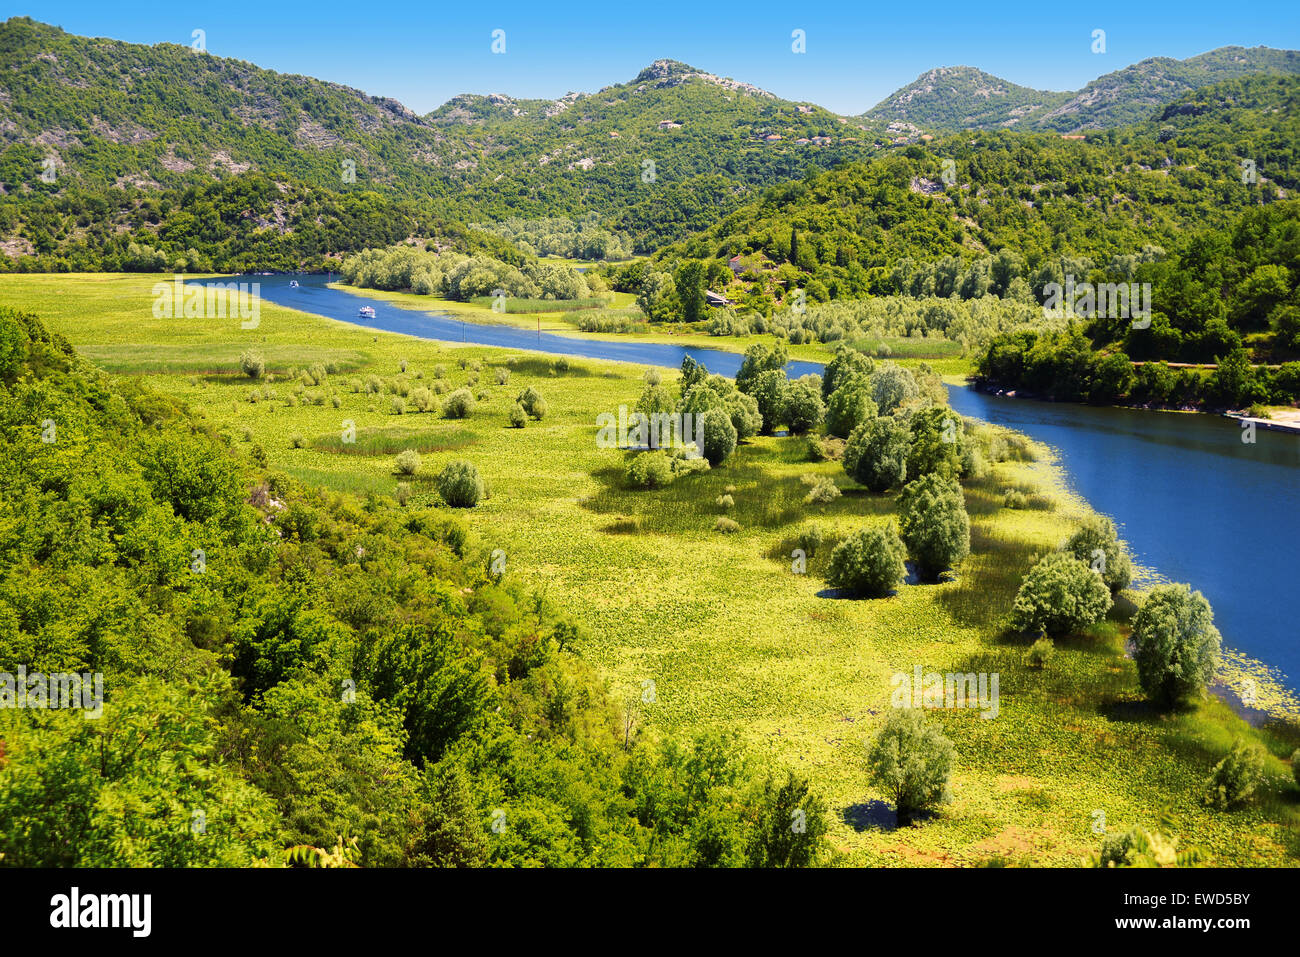 Le Monténégro, Skadarsko jezero, le plus grand lac de la péninsule des Balkans. Banque D'Images